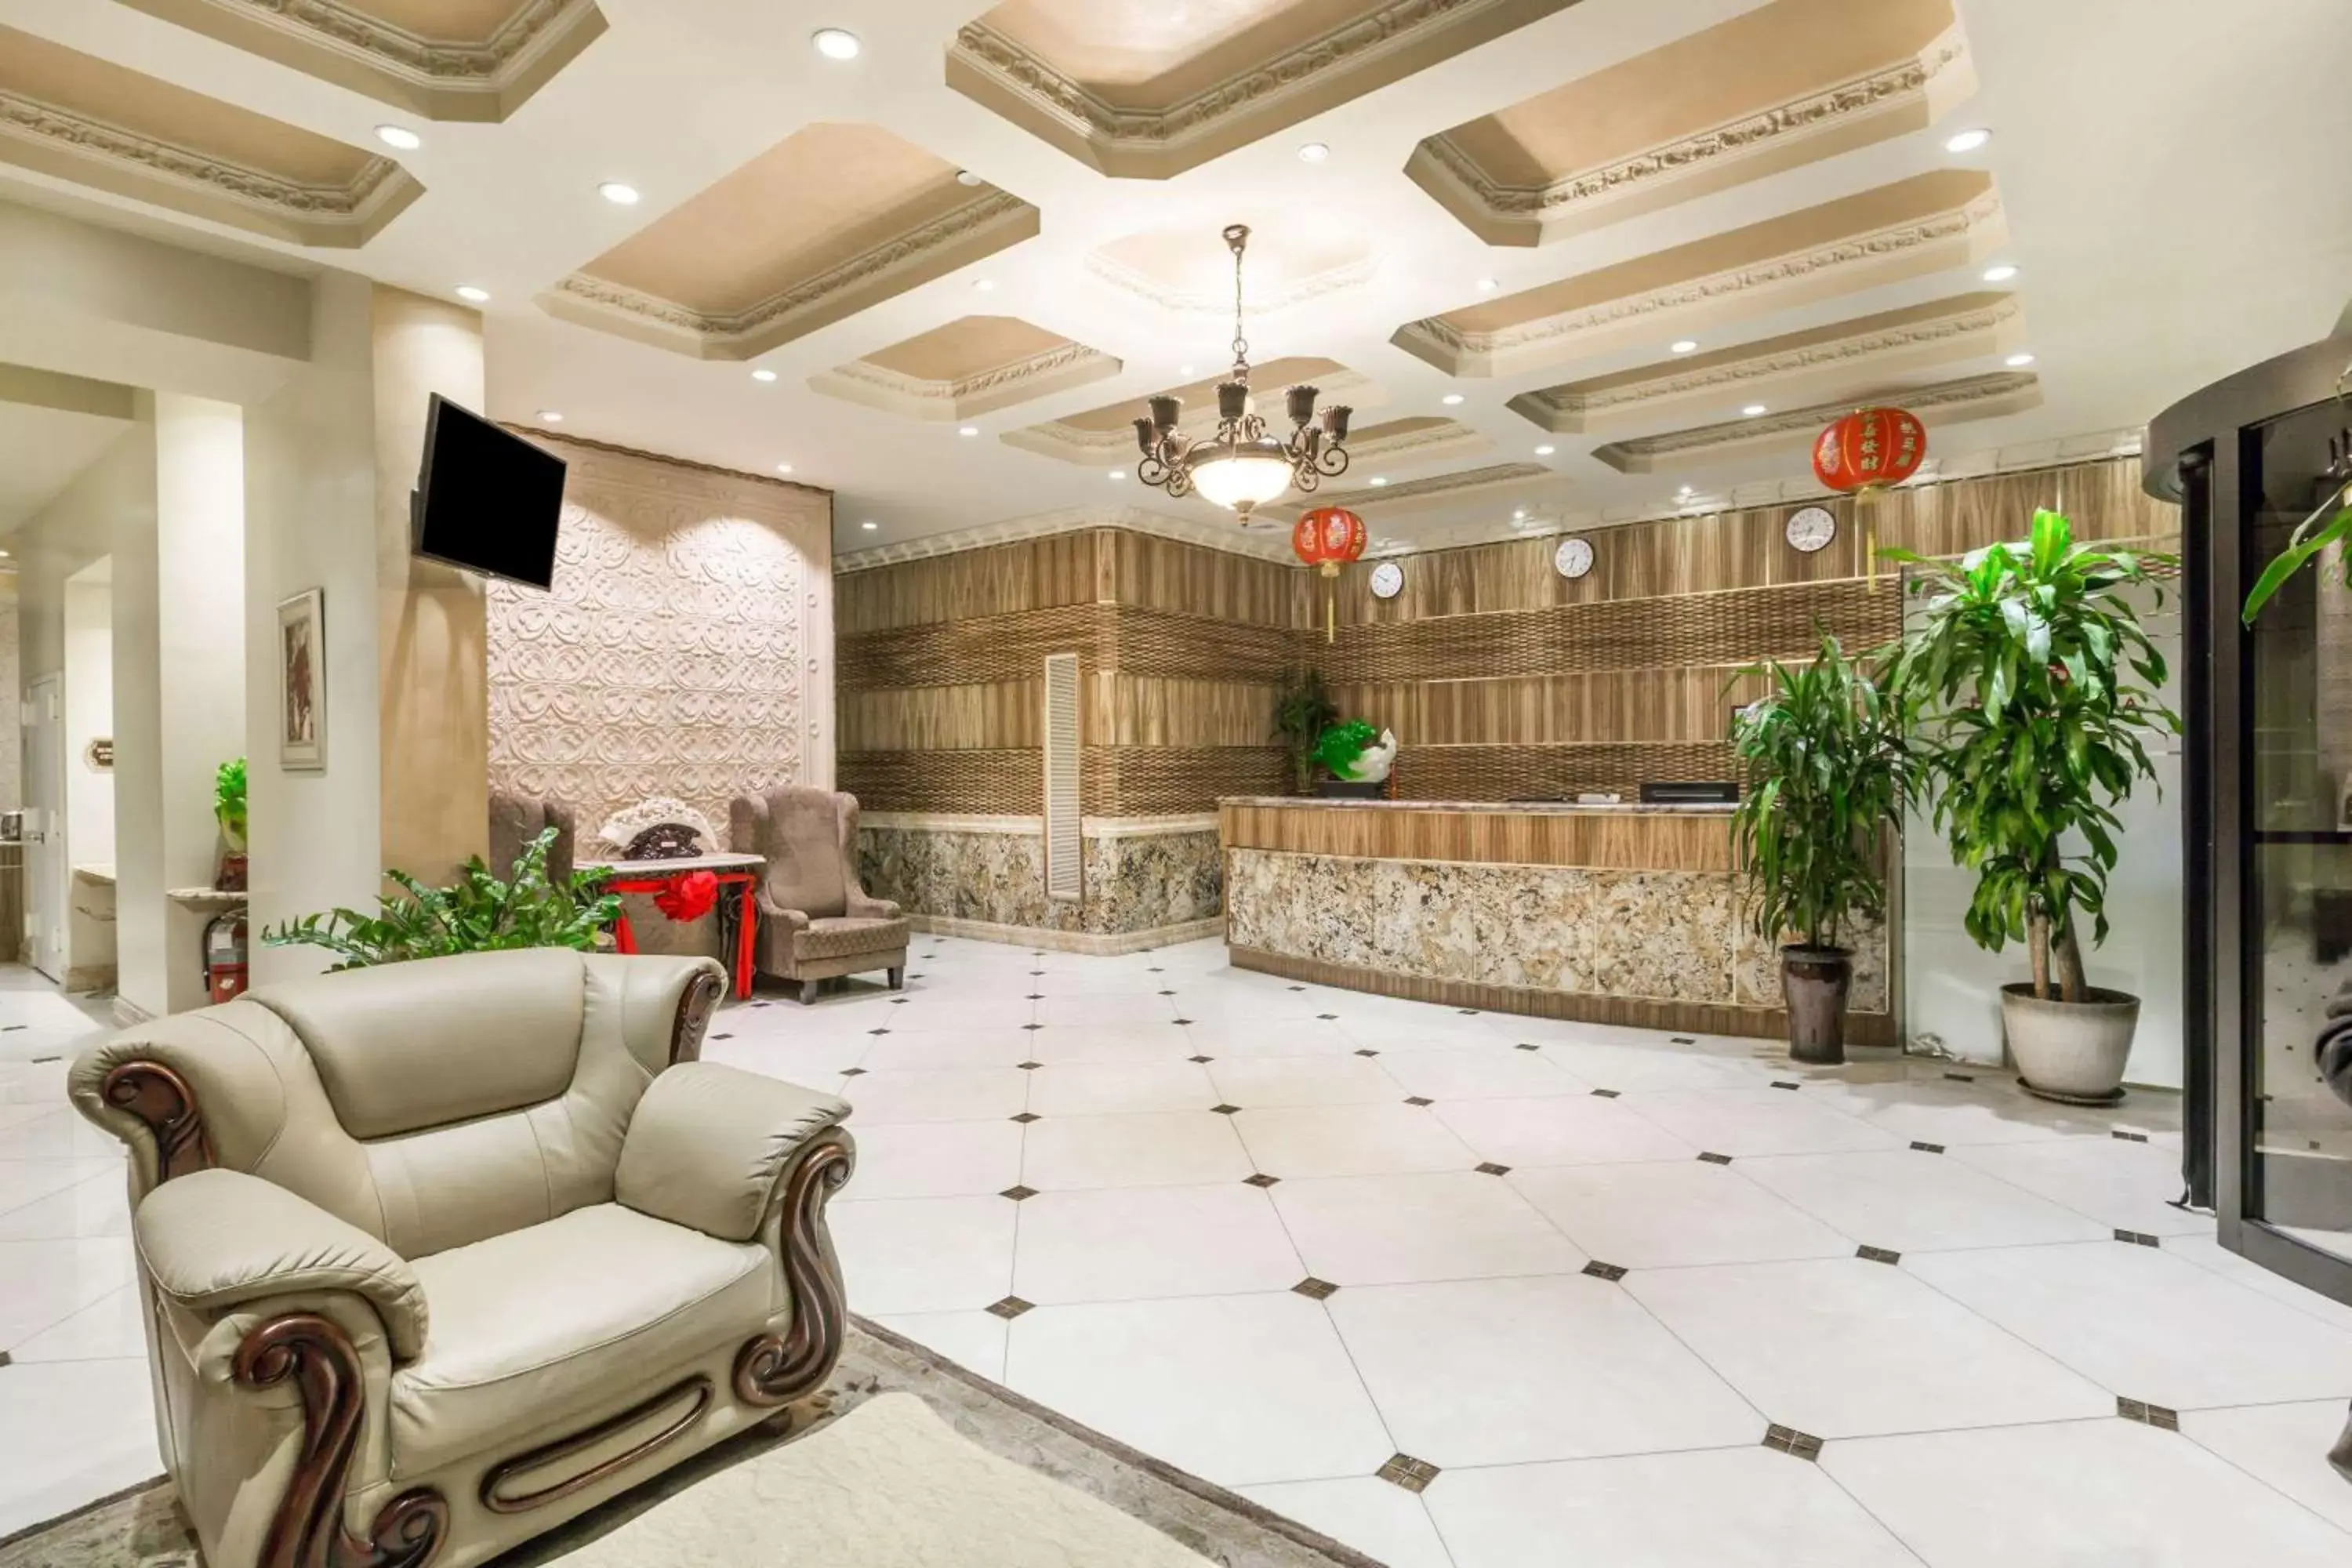 Lobby or reception, Lobby/Reception in Ramada by Wyndham Flushing Queens